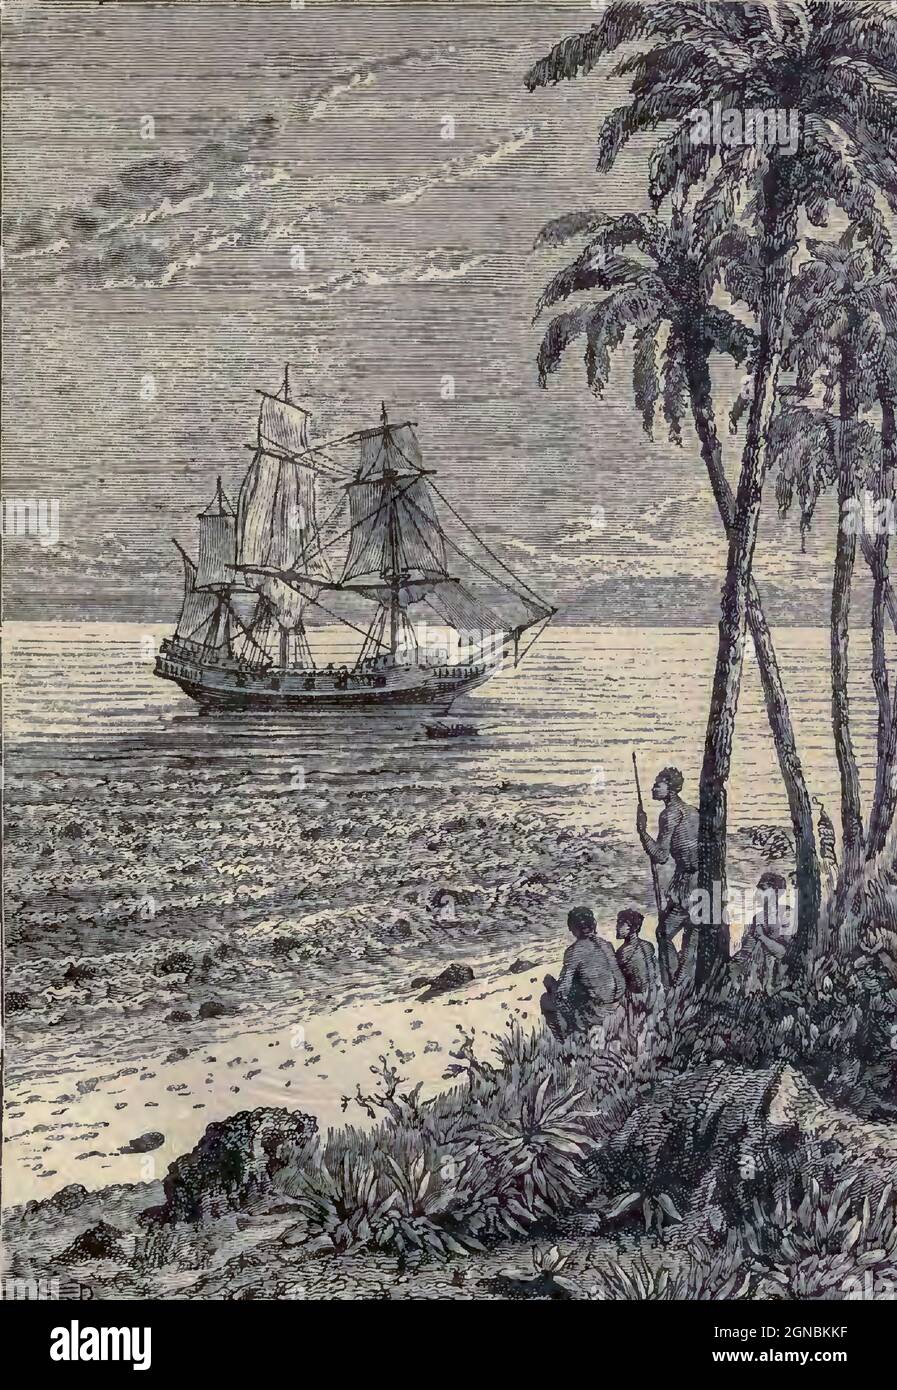 Die Bounty nähert sich der Küste HMS Bounty, auch bekannt als HM Armed Vessel Bounty, war ein kleines Handelsschiff, das die Royal Navy 1787 für eine botanische Mission kaufte. Das Schiff wurde unter dem Kommando von William Bligh in den Südpazifik geschickt, um Brotfruchtpflanzen zu erwerben und nach Westindien zu transportieren. Diese Mission wurde aufgrund einer Meuterei von 1789, die von dem amtierenden Leutnant Fletcher Christian angeführt wurde, nicht abgeschlossen, ein Vorfall, der heute im Volksmund als Meuterei auf der Bounty bekannt ist. Die Meuterer verbrannten Bounty später, als sie auf Pitcairn Island vor Anker lag. Stockfoto